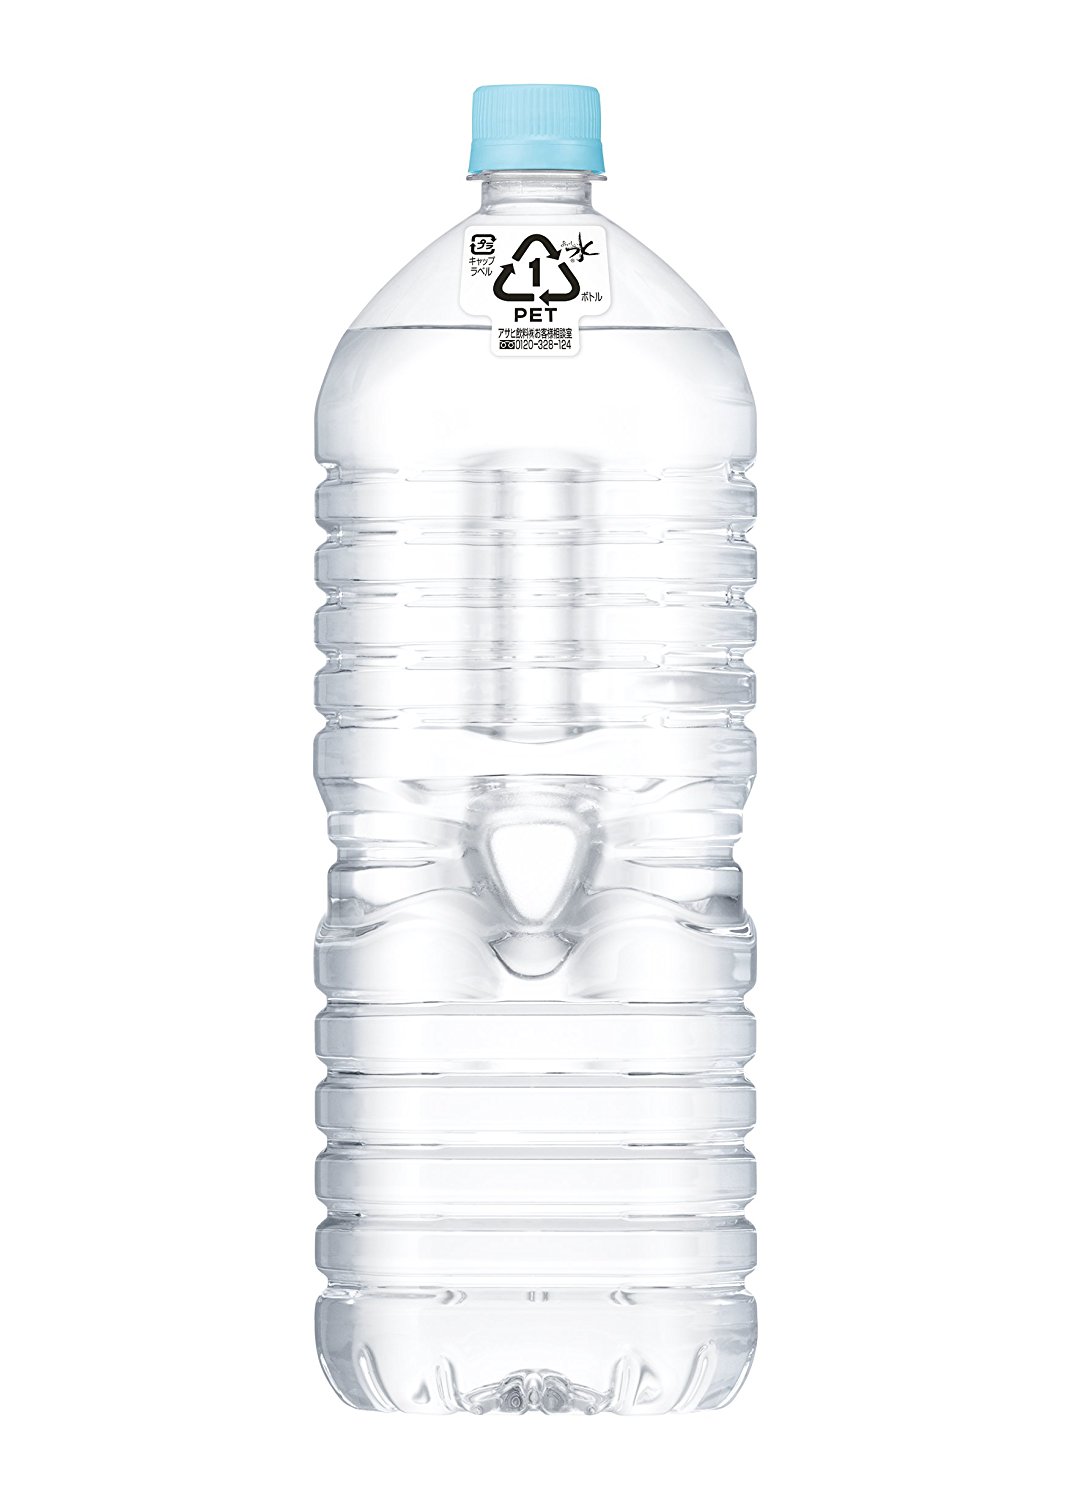 アマゾンでアサヒ飲料 おいしい水 天然水 ラベルレスボトル PET(1.9L×6本)×2箱がタイムセール中。